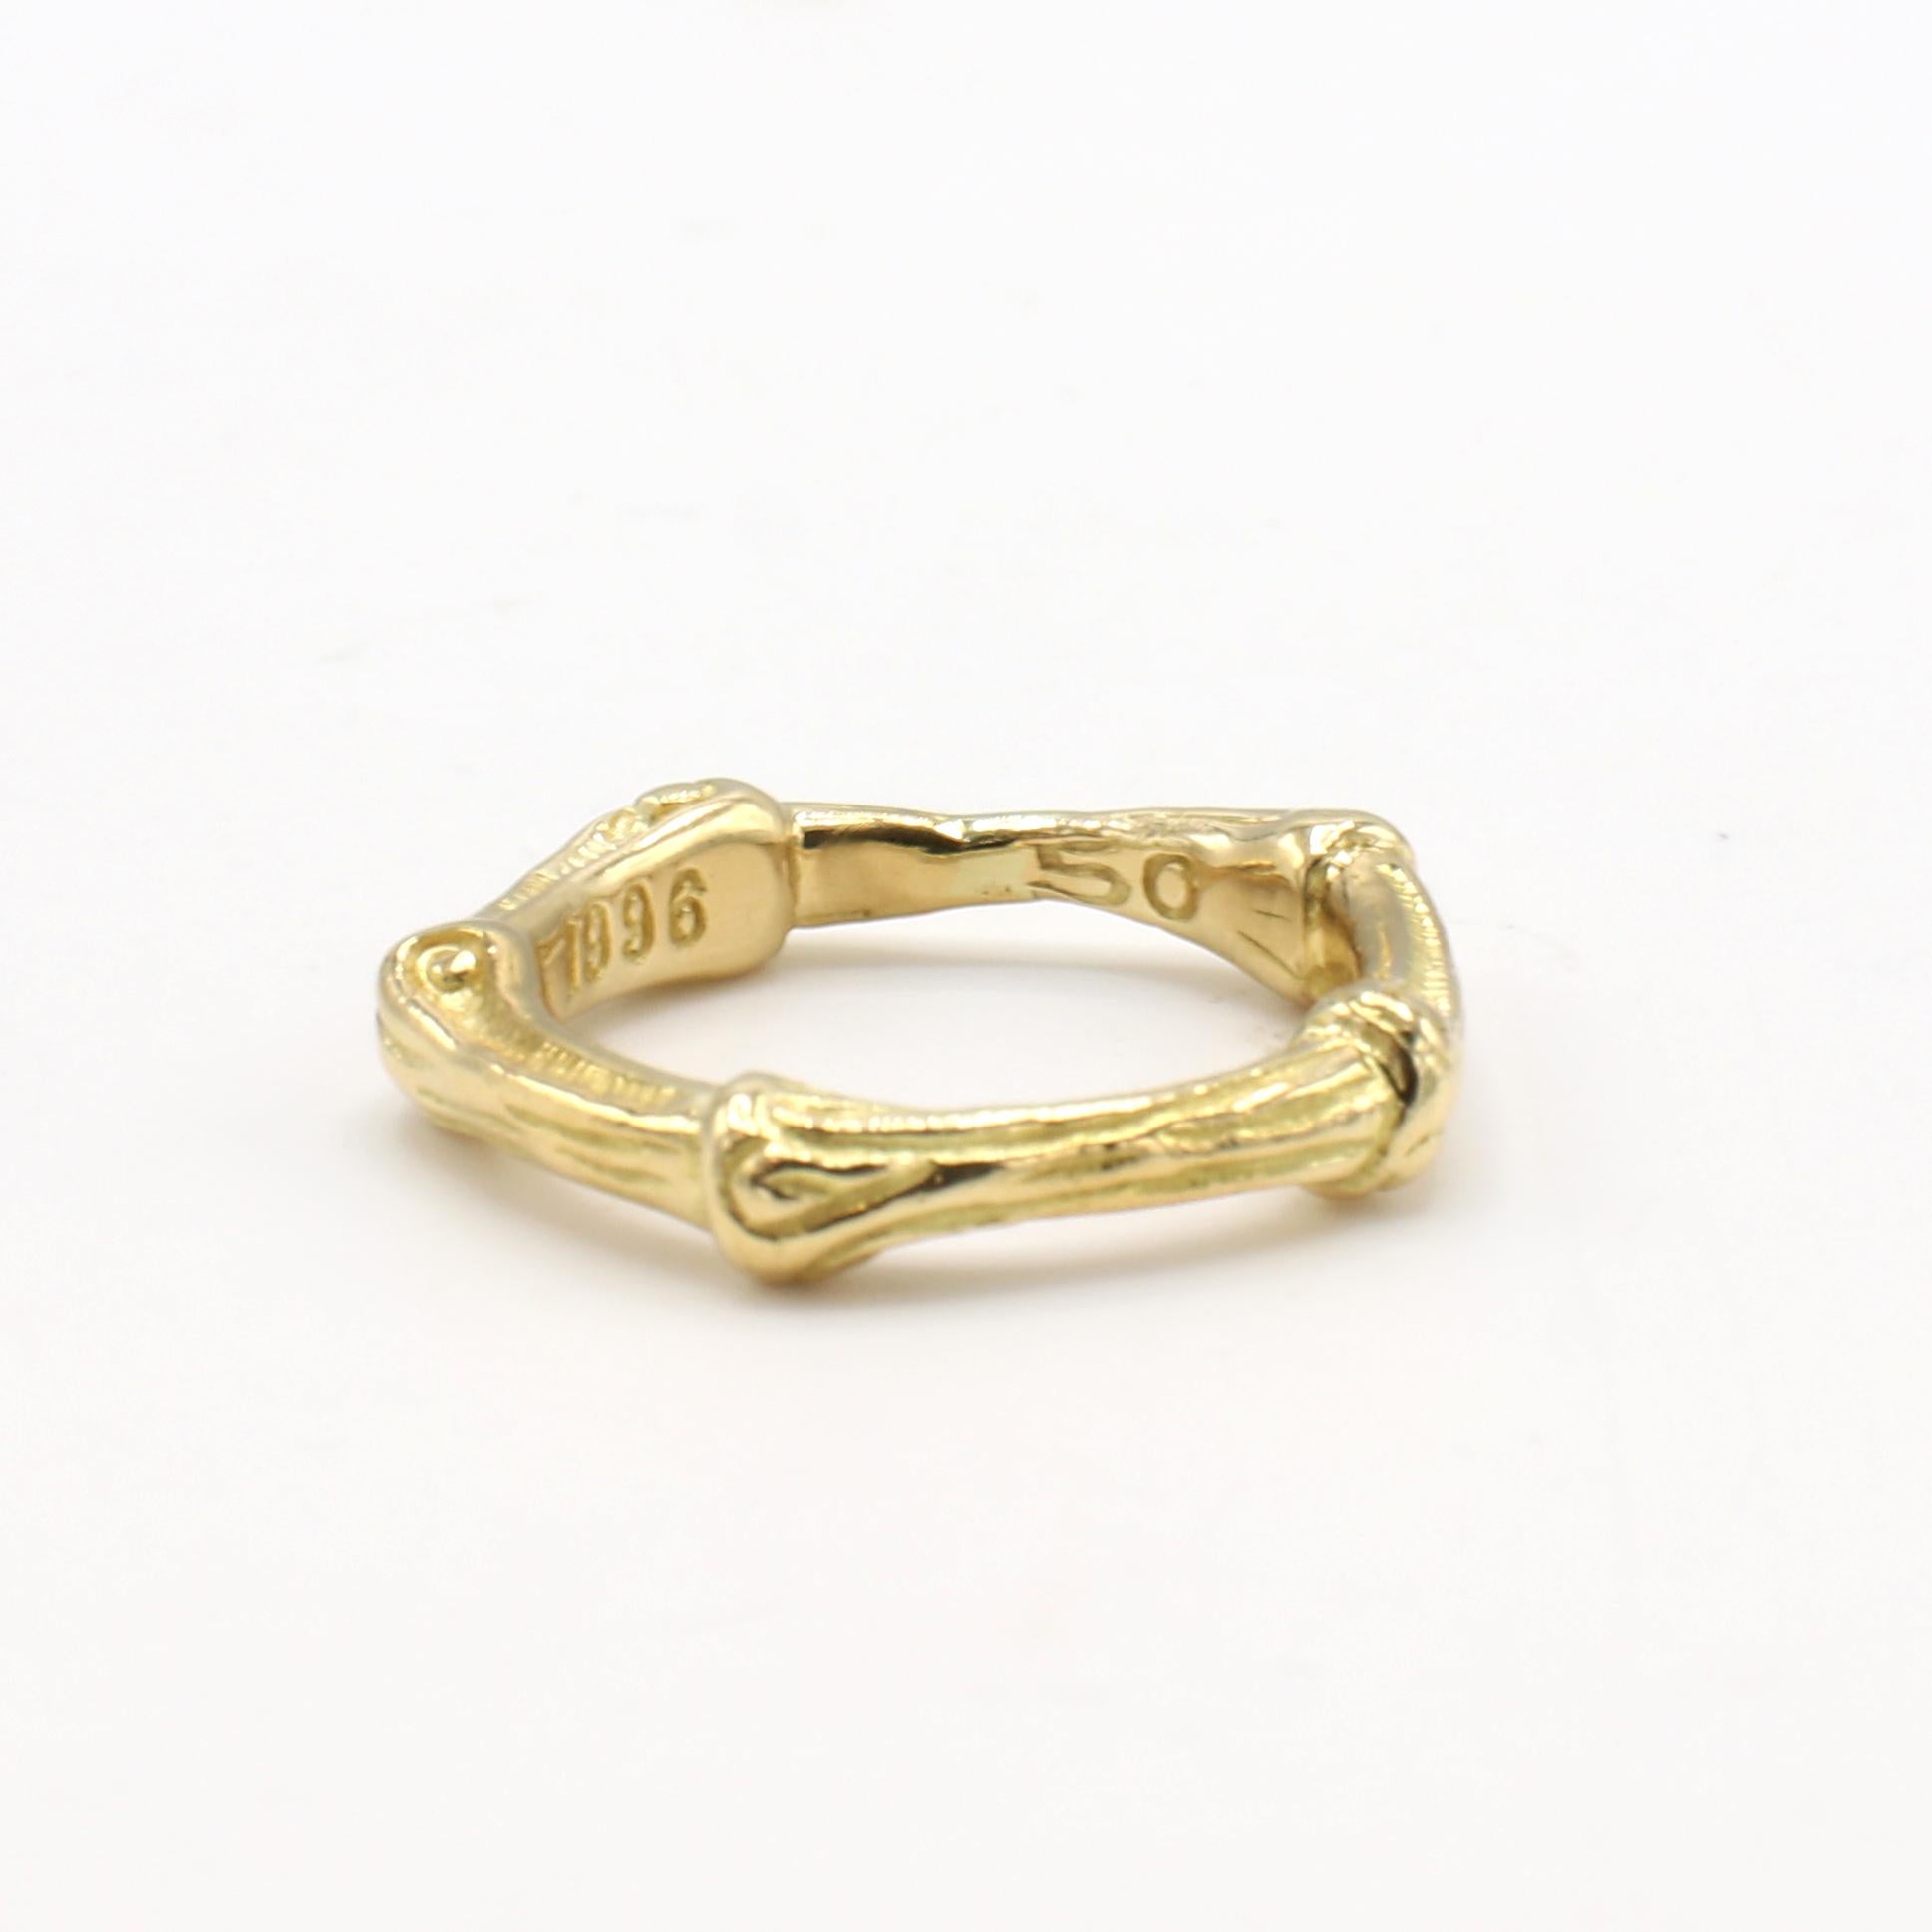 Contemporary Tiffany & Co. Bamboo 18 Karat Yellow Gold Band Ring 1996